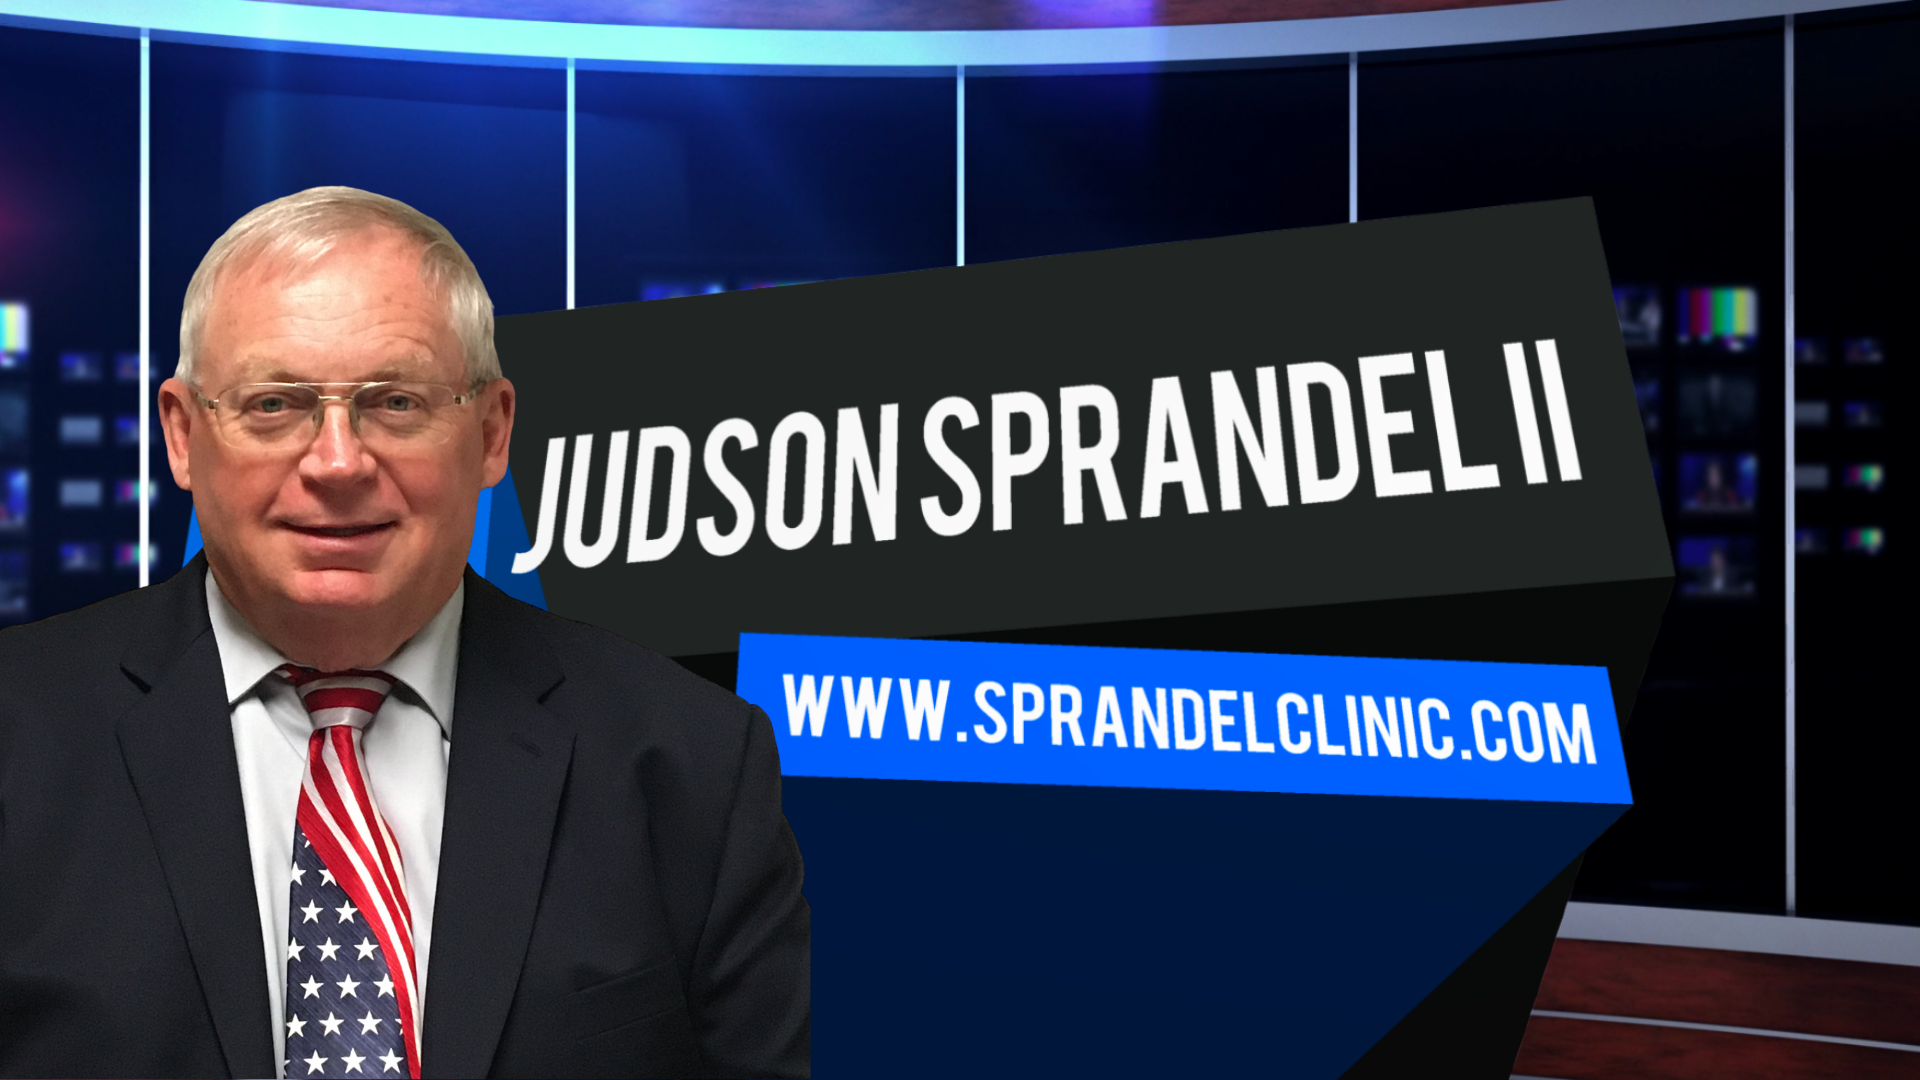 Dr. Judson Sprandel